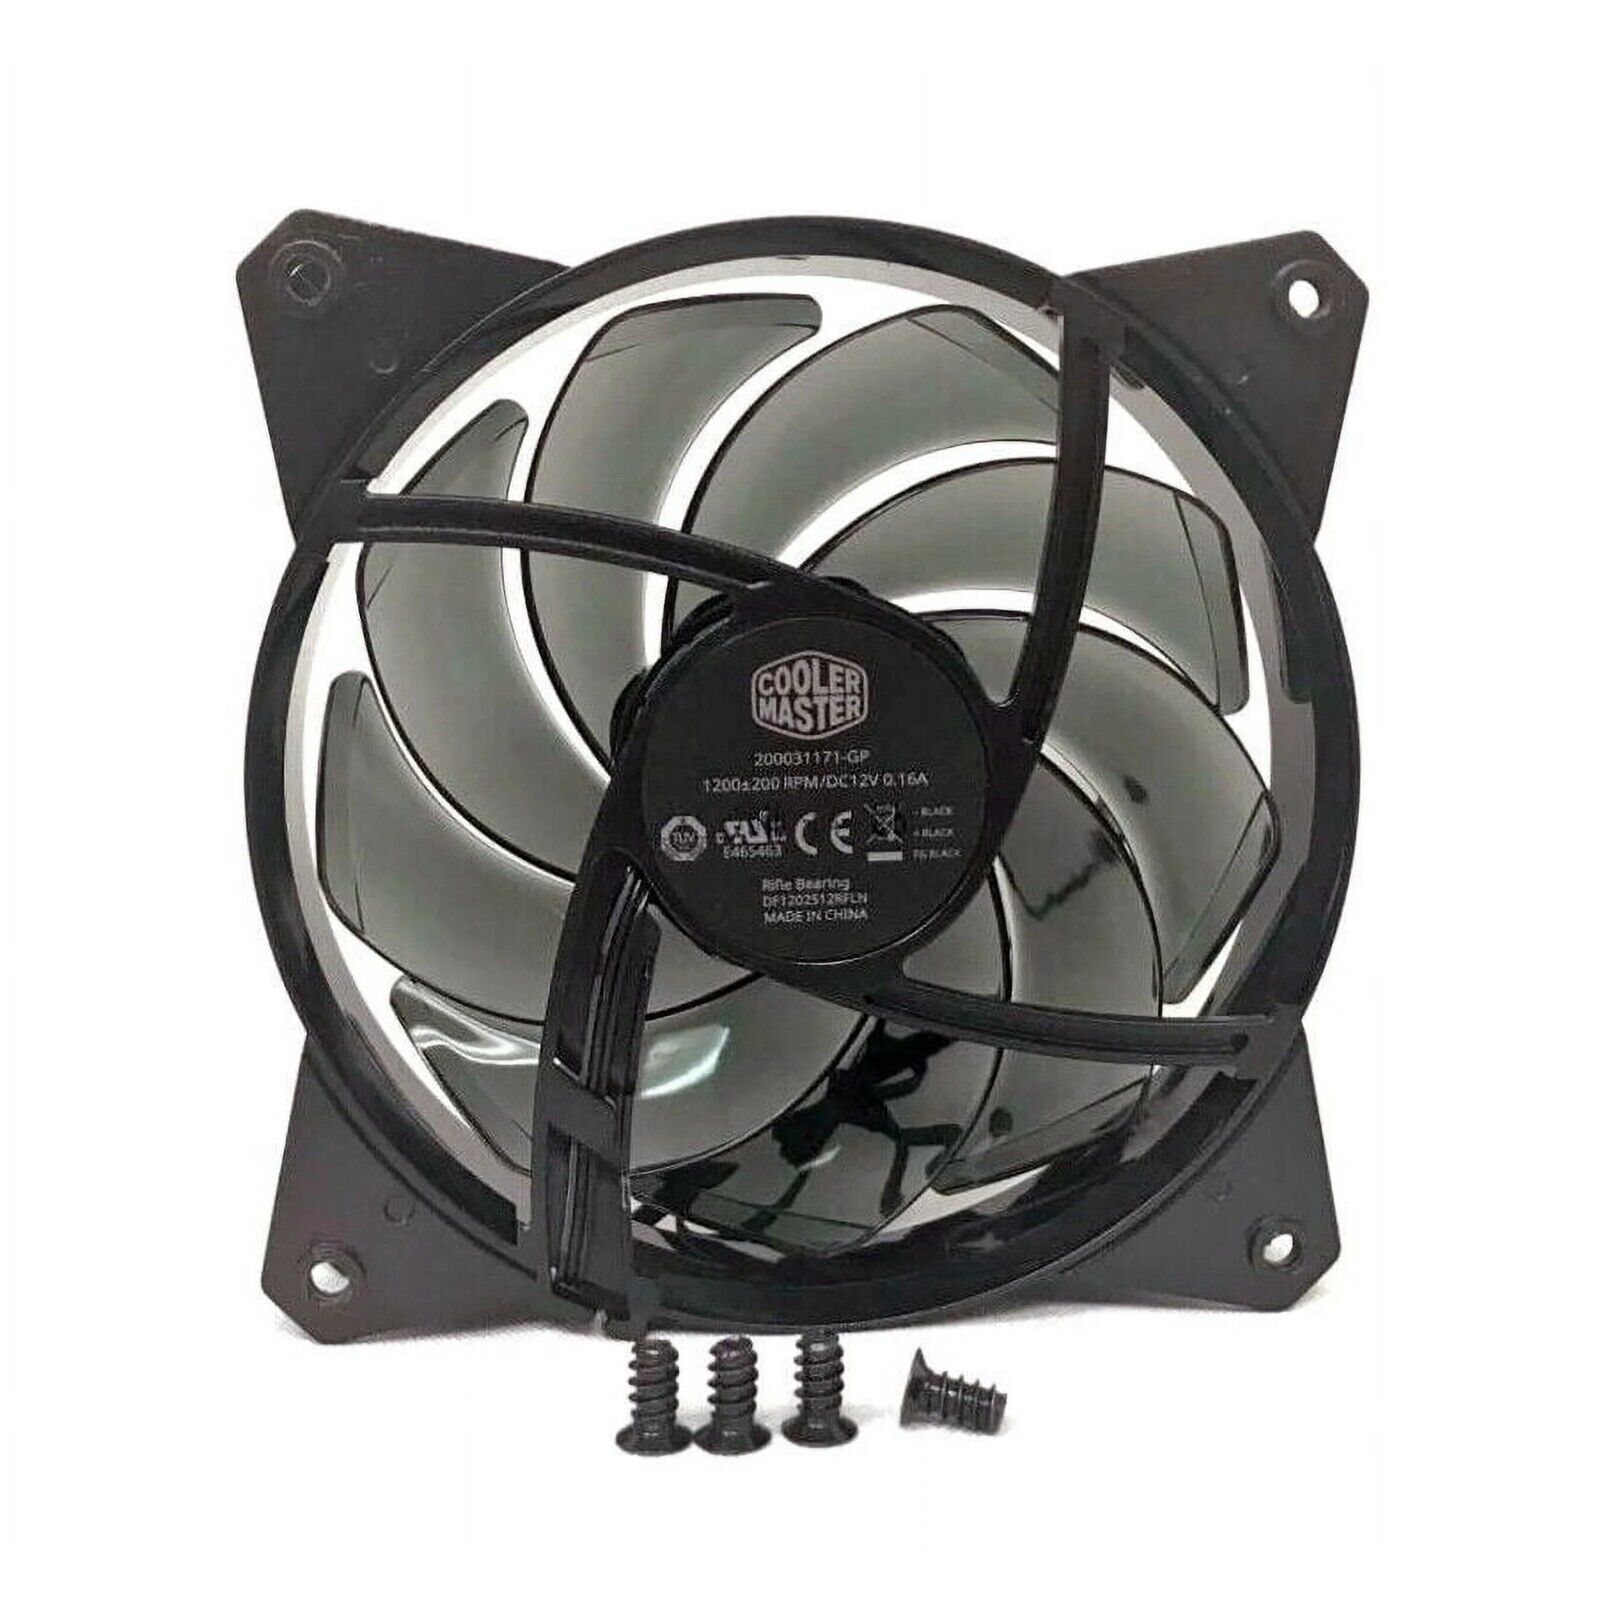 Cooler Master 1200+/-200 RPM DC 12V 0.6A - Quiet Silent Black Case Fan No LED 16